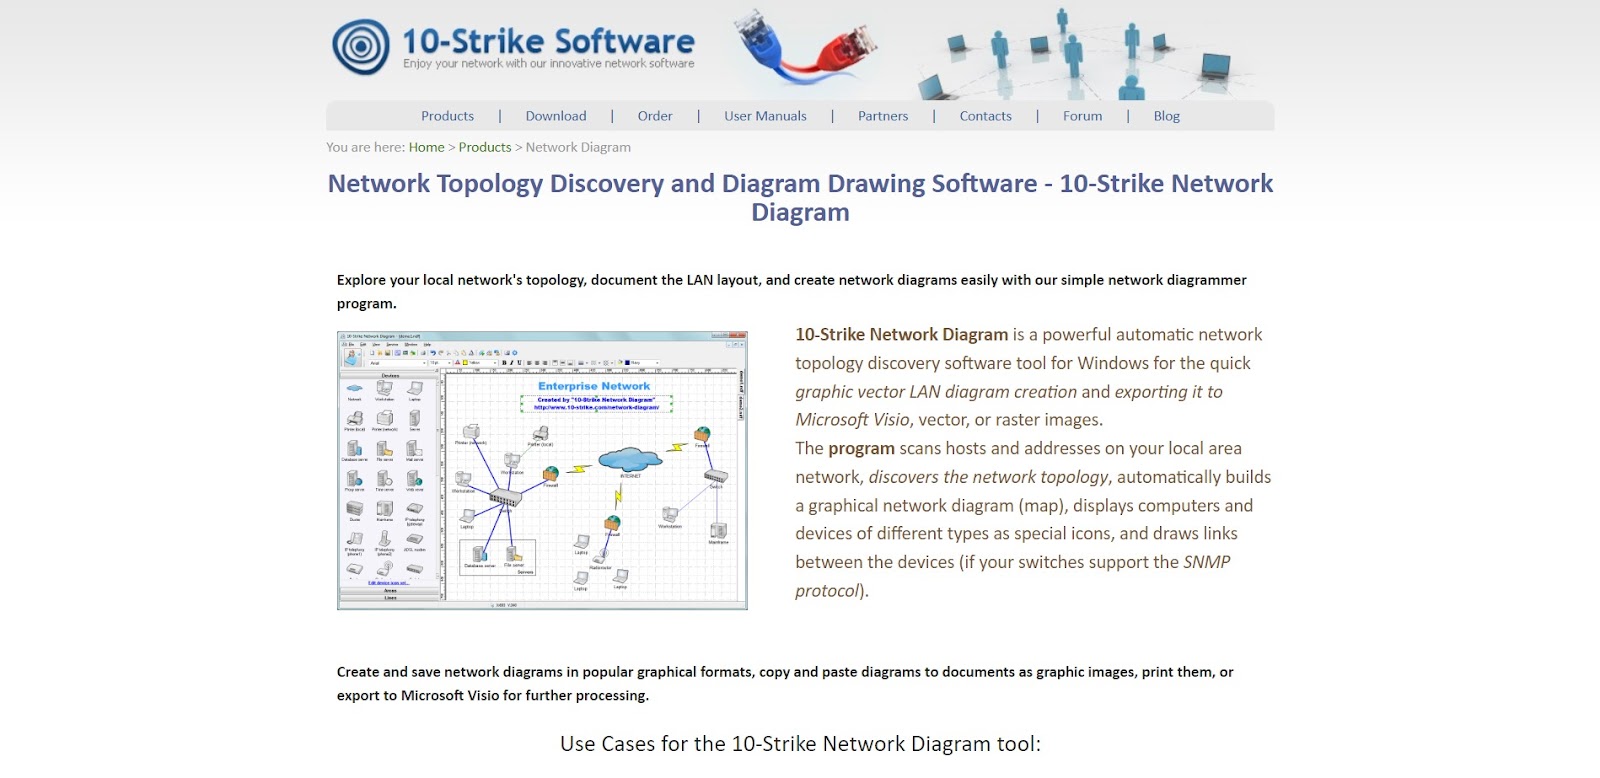 A screenshot of 10-Strike Software's website